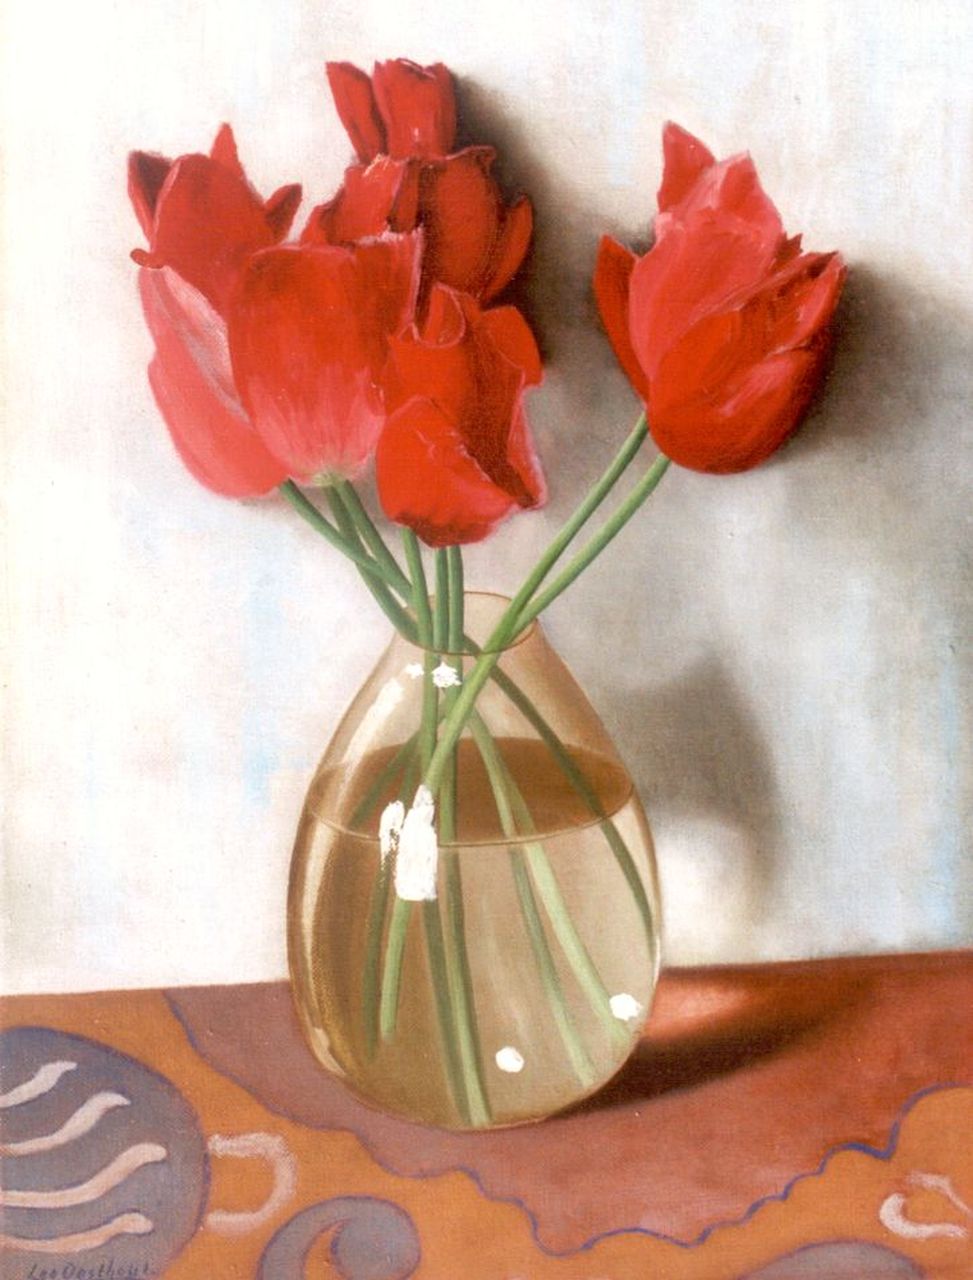 Oosthout L.P.B.  | Leonardus Petrus Balthazar 'Leo' Oosthout, Tulpen in een vaas, olieverf op doek 40,0 x 30,0 cm, gesigneerd linksonder